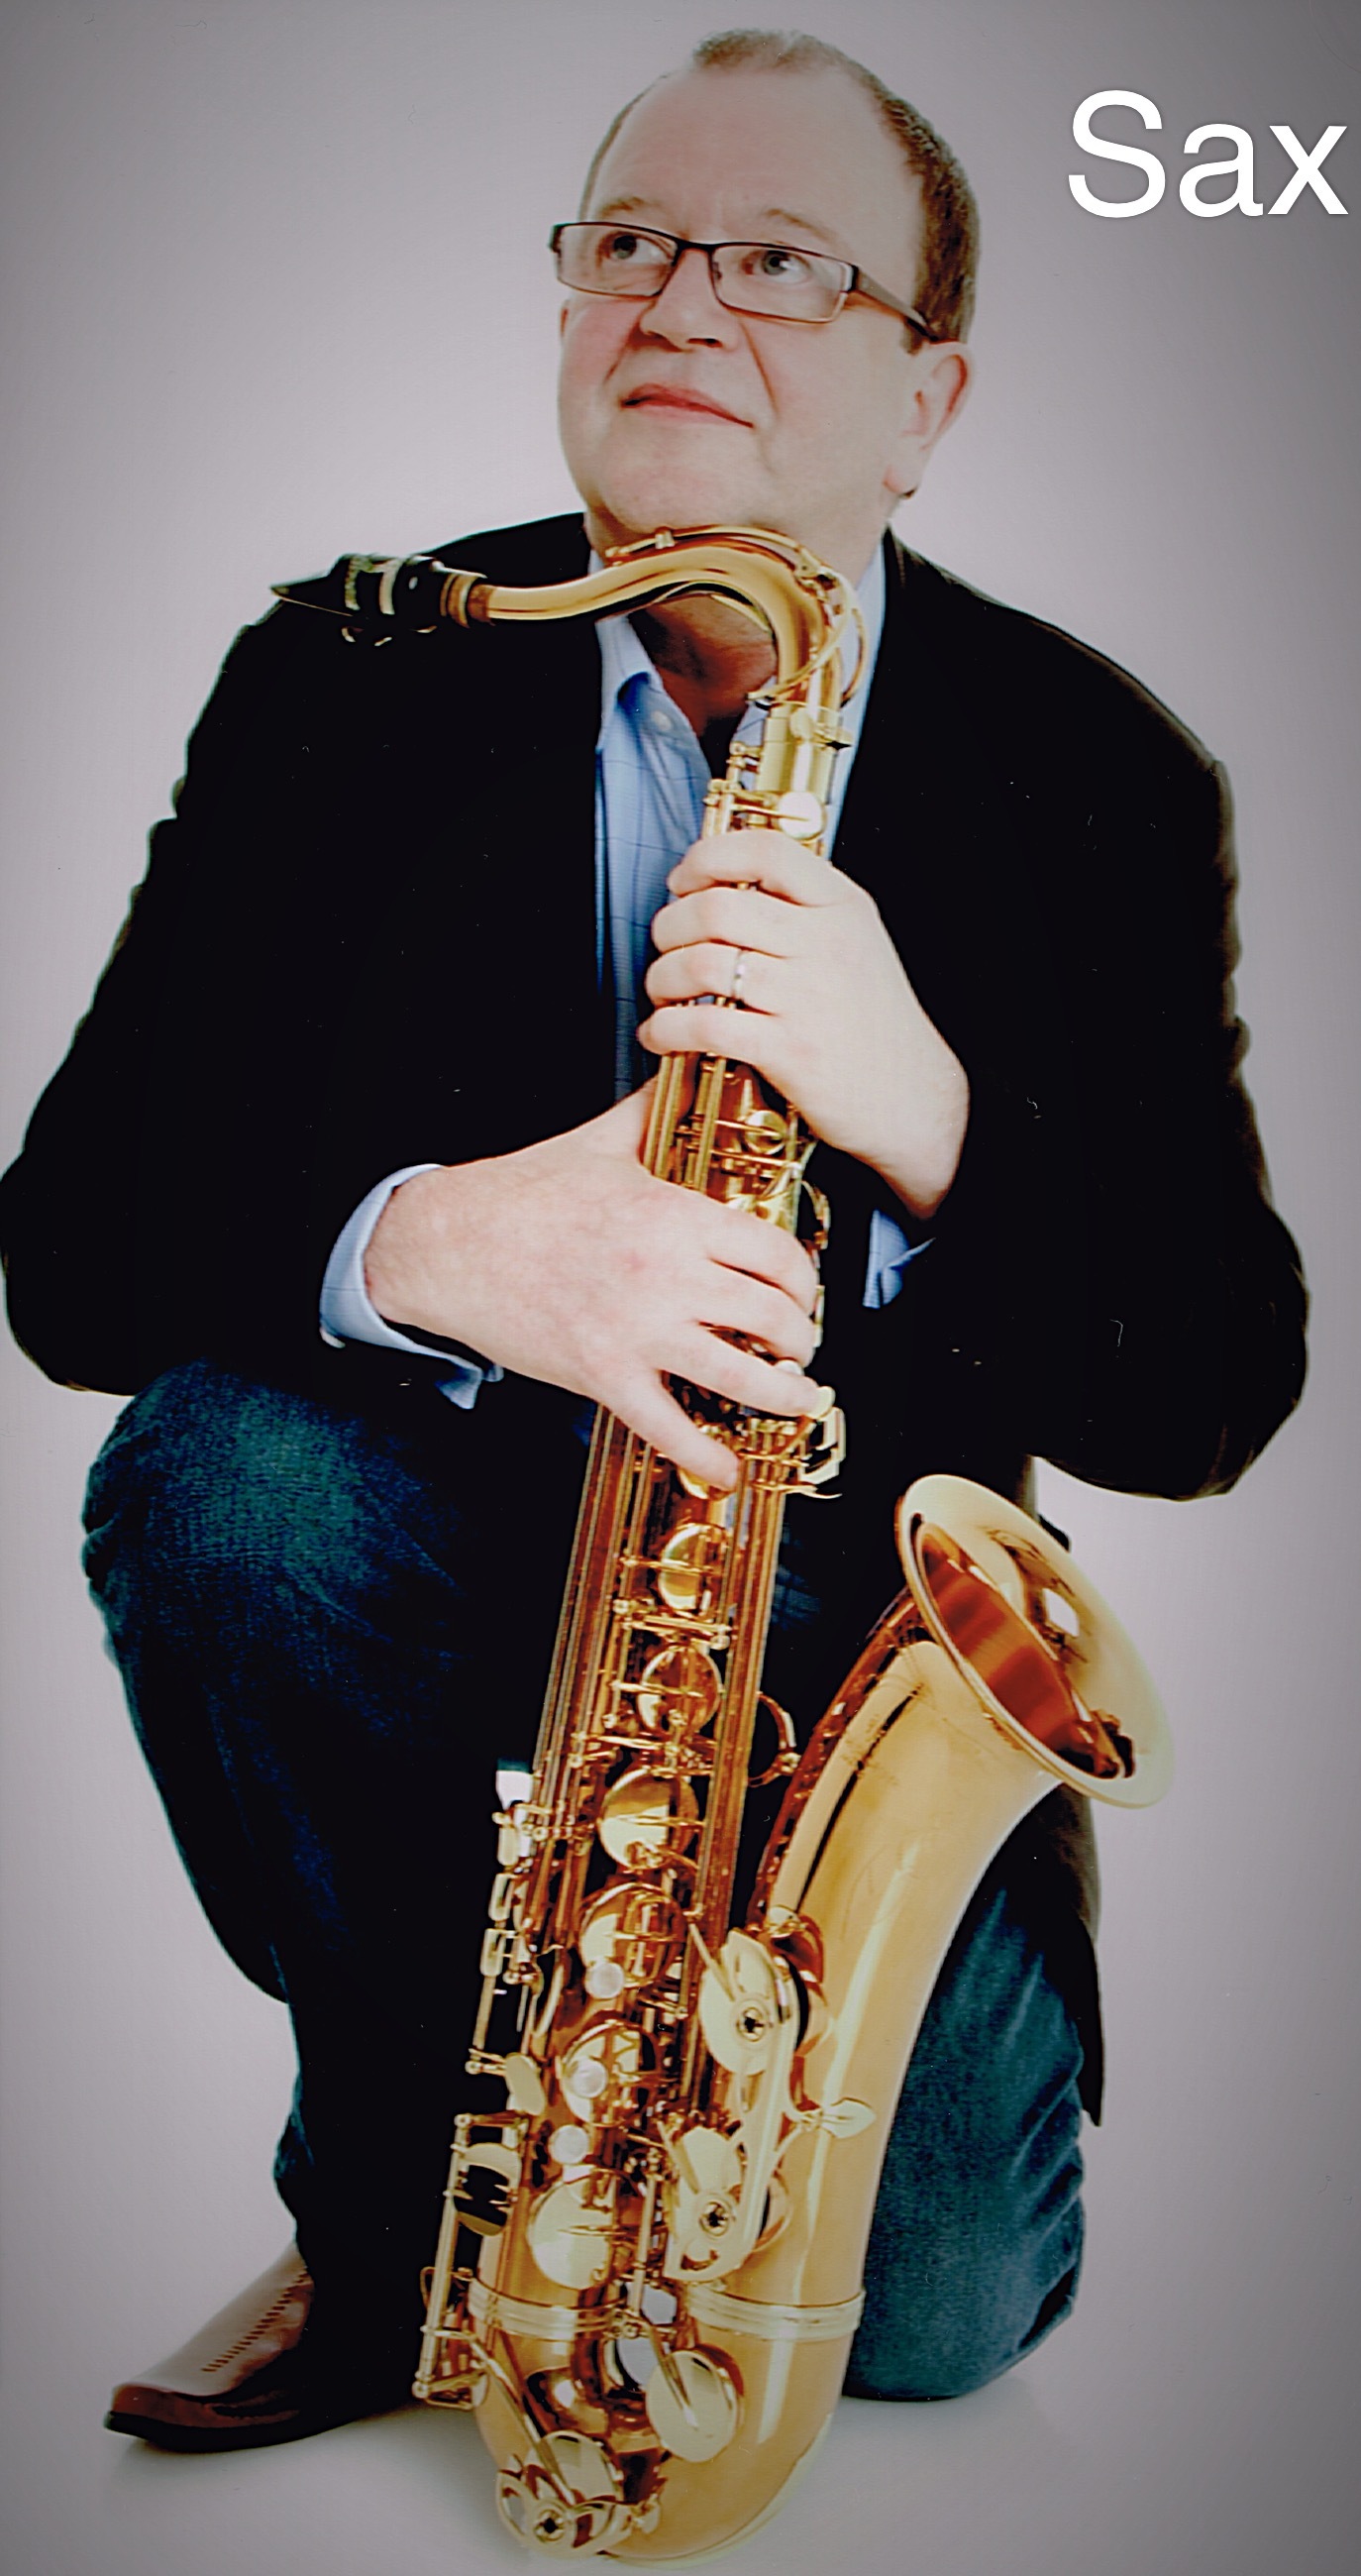 Saxophonist Ken in Bedlington, Northumberland